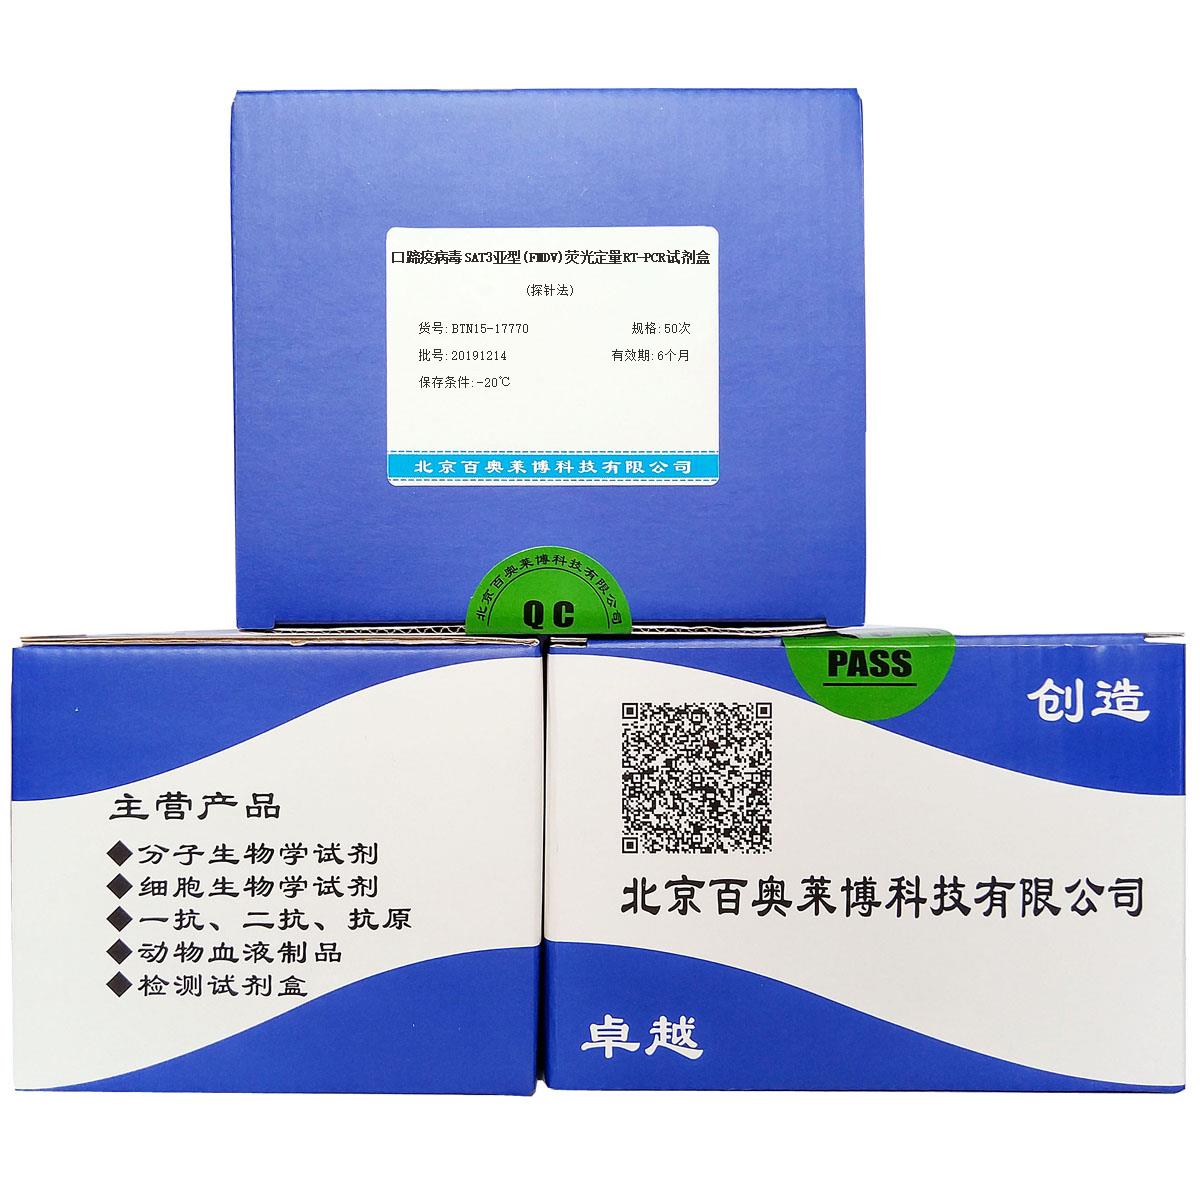 口蹄疫病毒SAT3亚型(FMDV)荧光定量RT-PCR试剂盒(探针法)